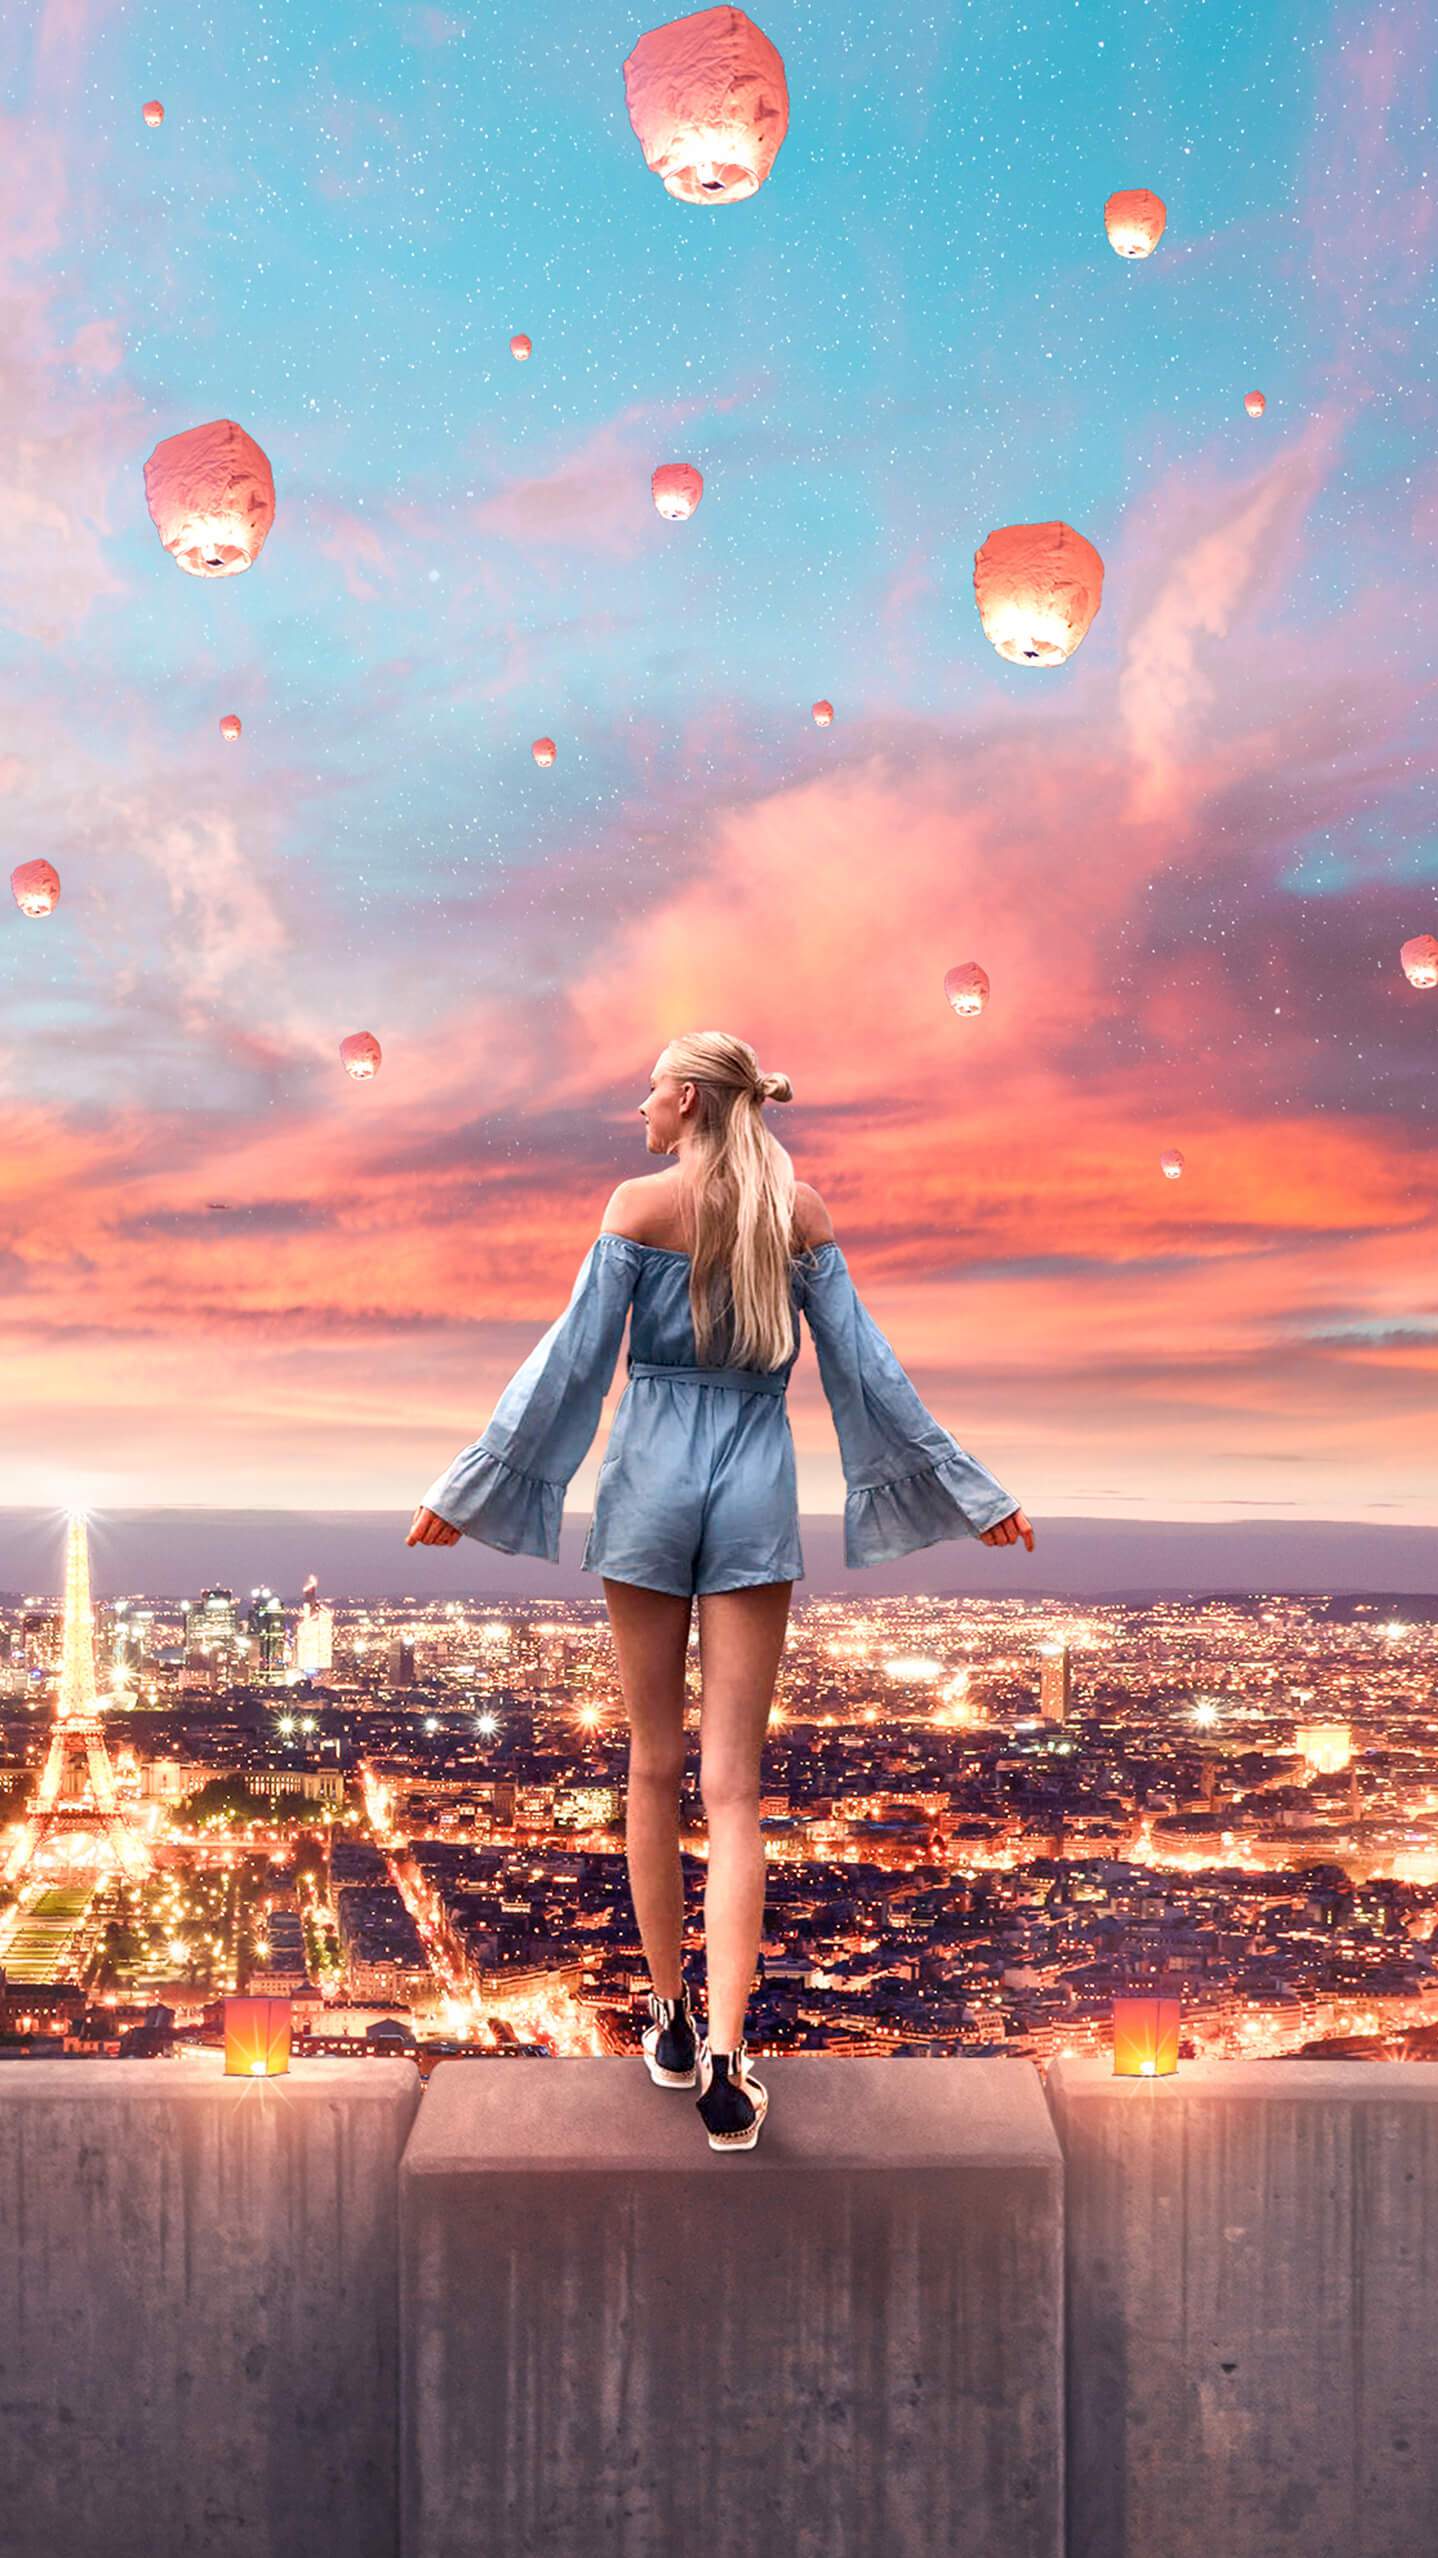 Girl In Paris IPhone Wallpaper Wallpaper, iPhone Wallpaper